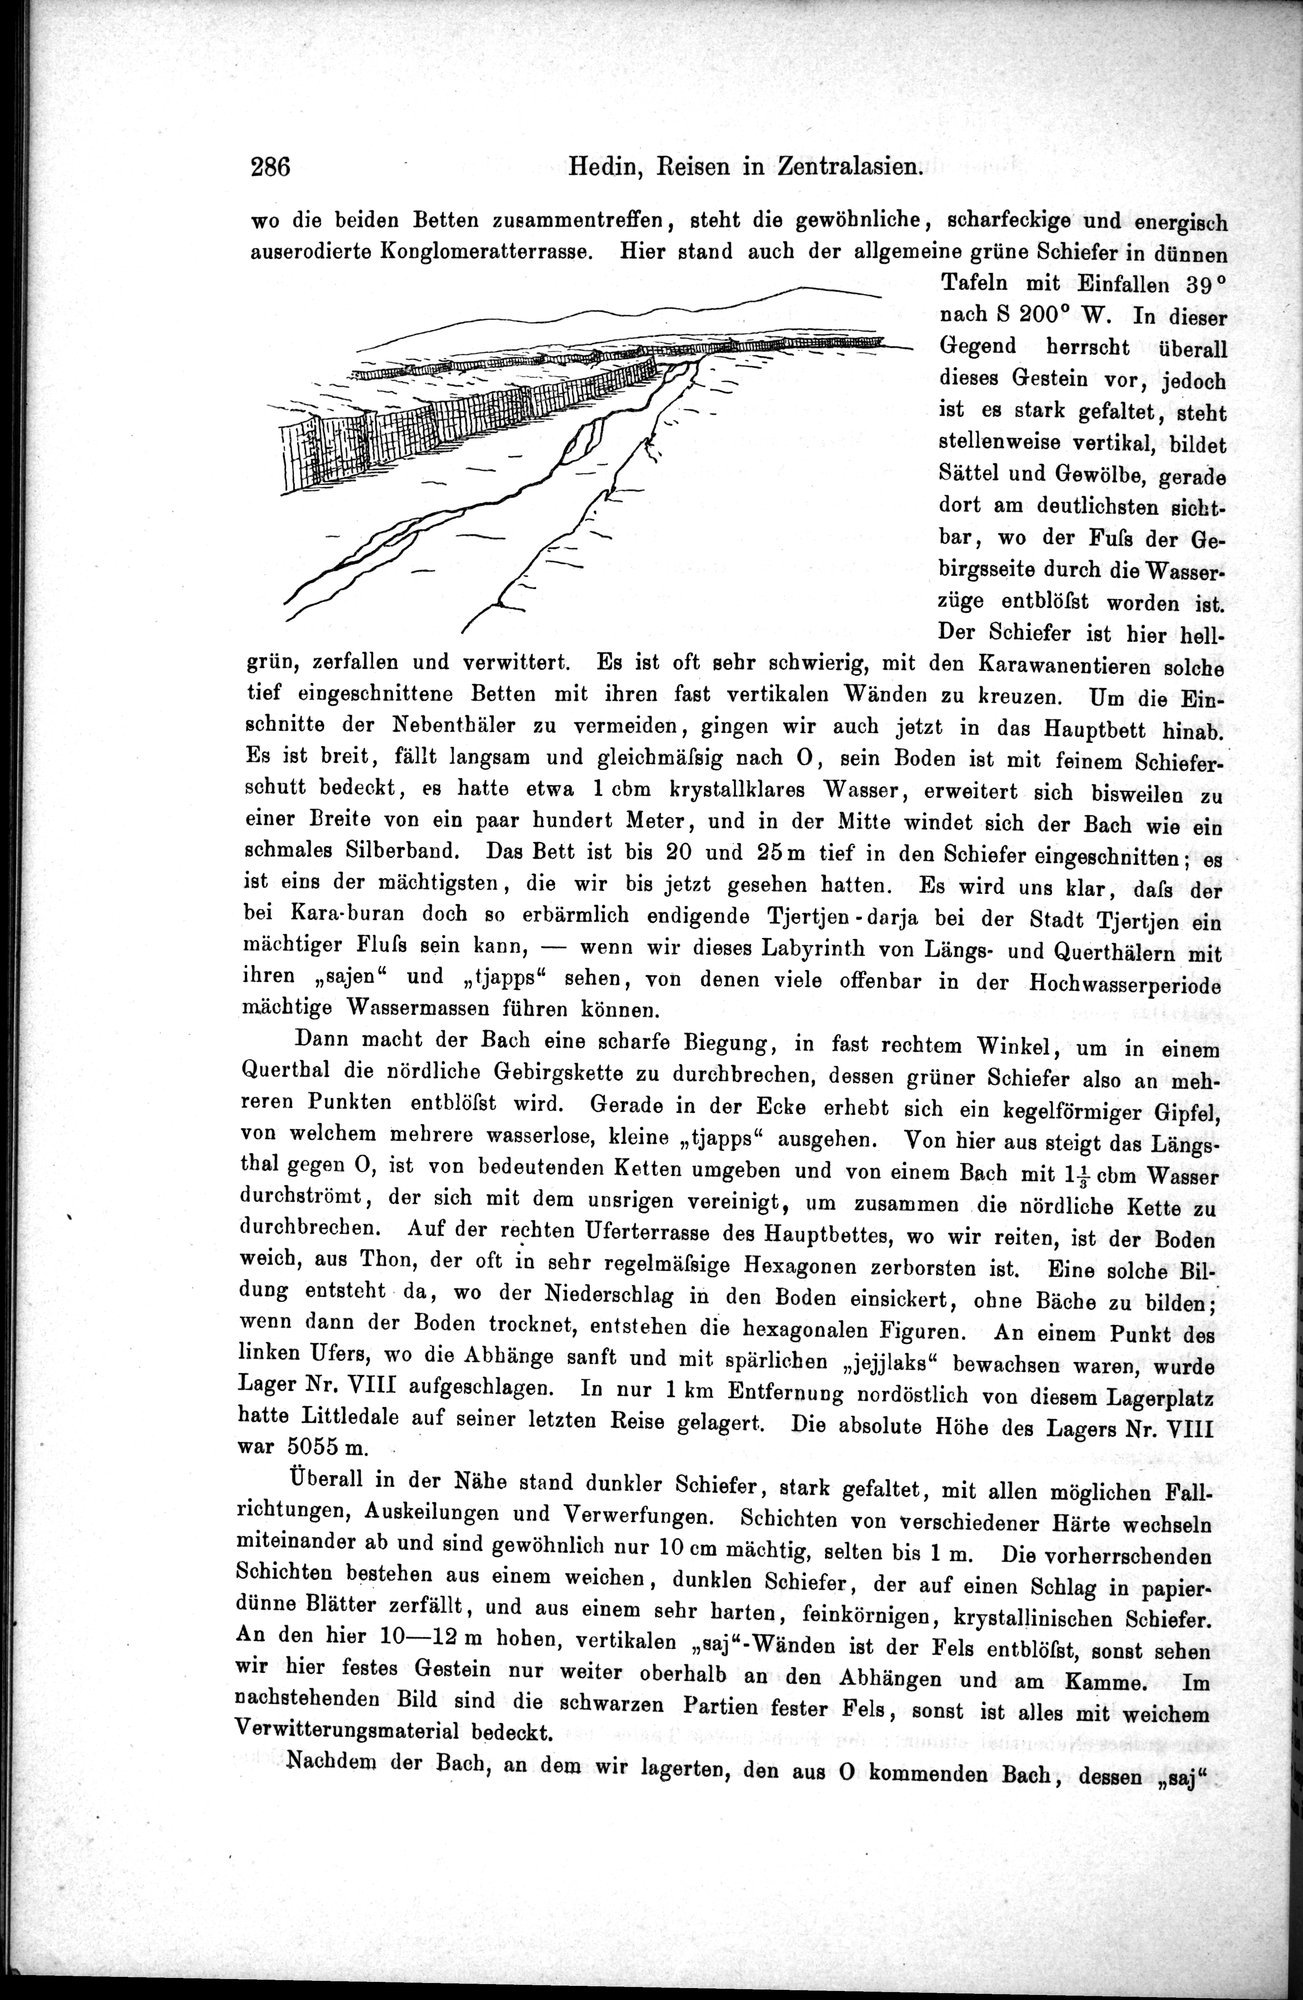 Die Geographische-Wissenschaftlichen Ergebnisse meiner Reisen in Zentralasien, 1894-1897 : vol.1 / Page 298 (Grayscale High Resolution Image)